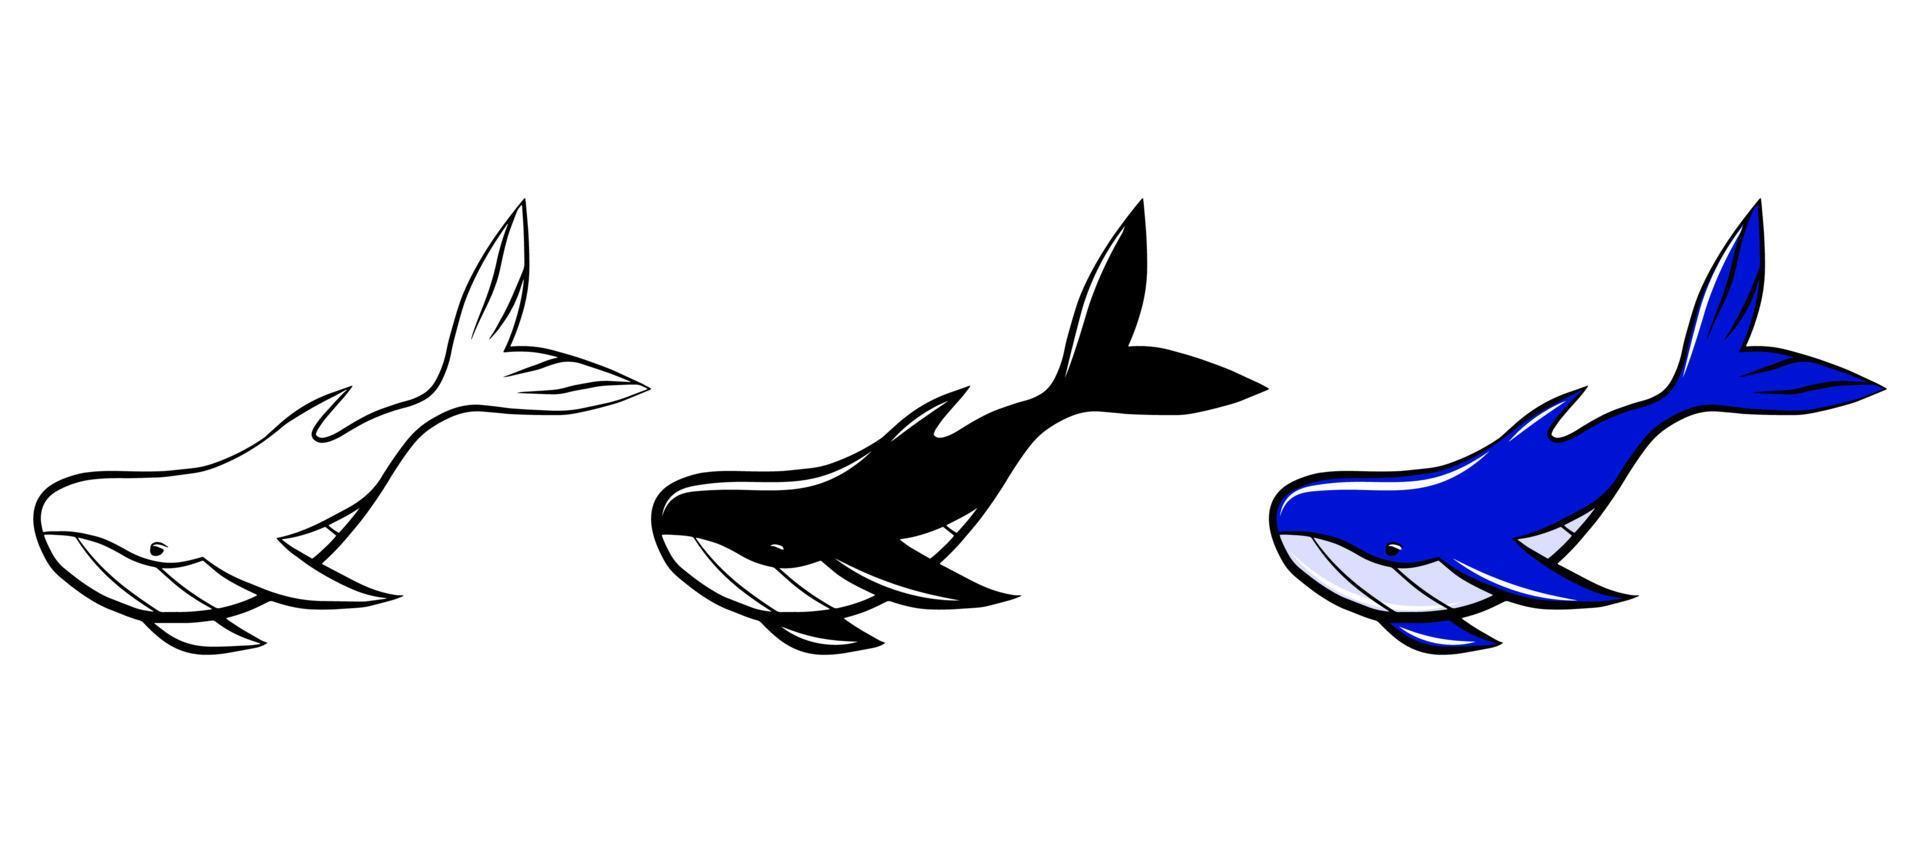 whale blå vektor Ikonuppsättning. isolerade grafisk logotyp designelement. vattenlevande vilda djur. doodle monokrom ritmall. konturskiss klistermärke. målarbok för barn. söt havsbo.